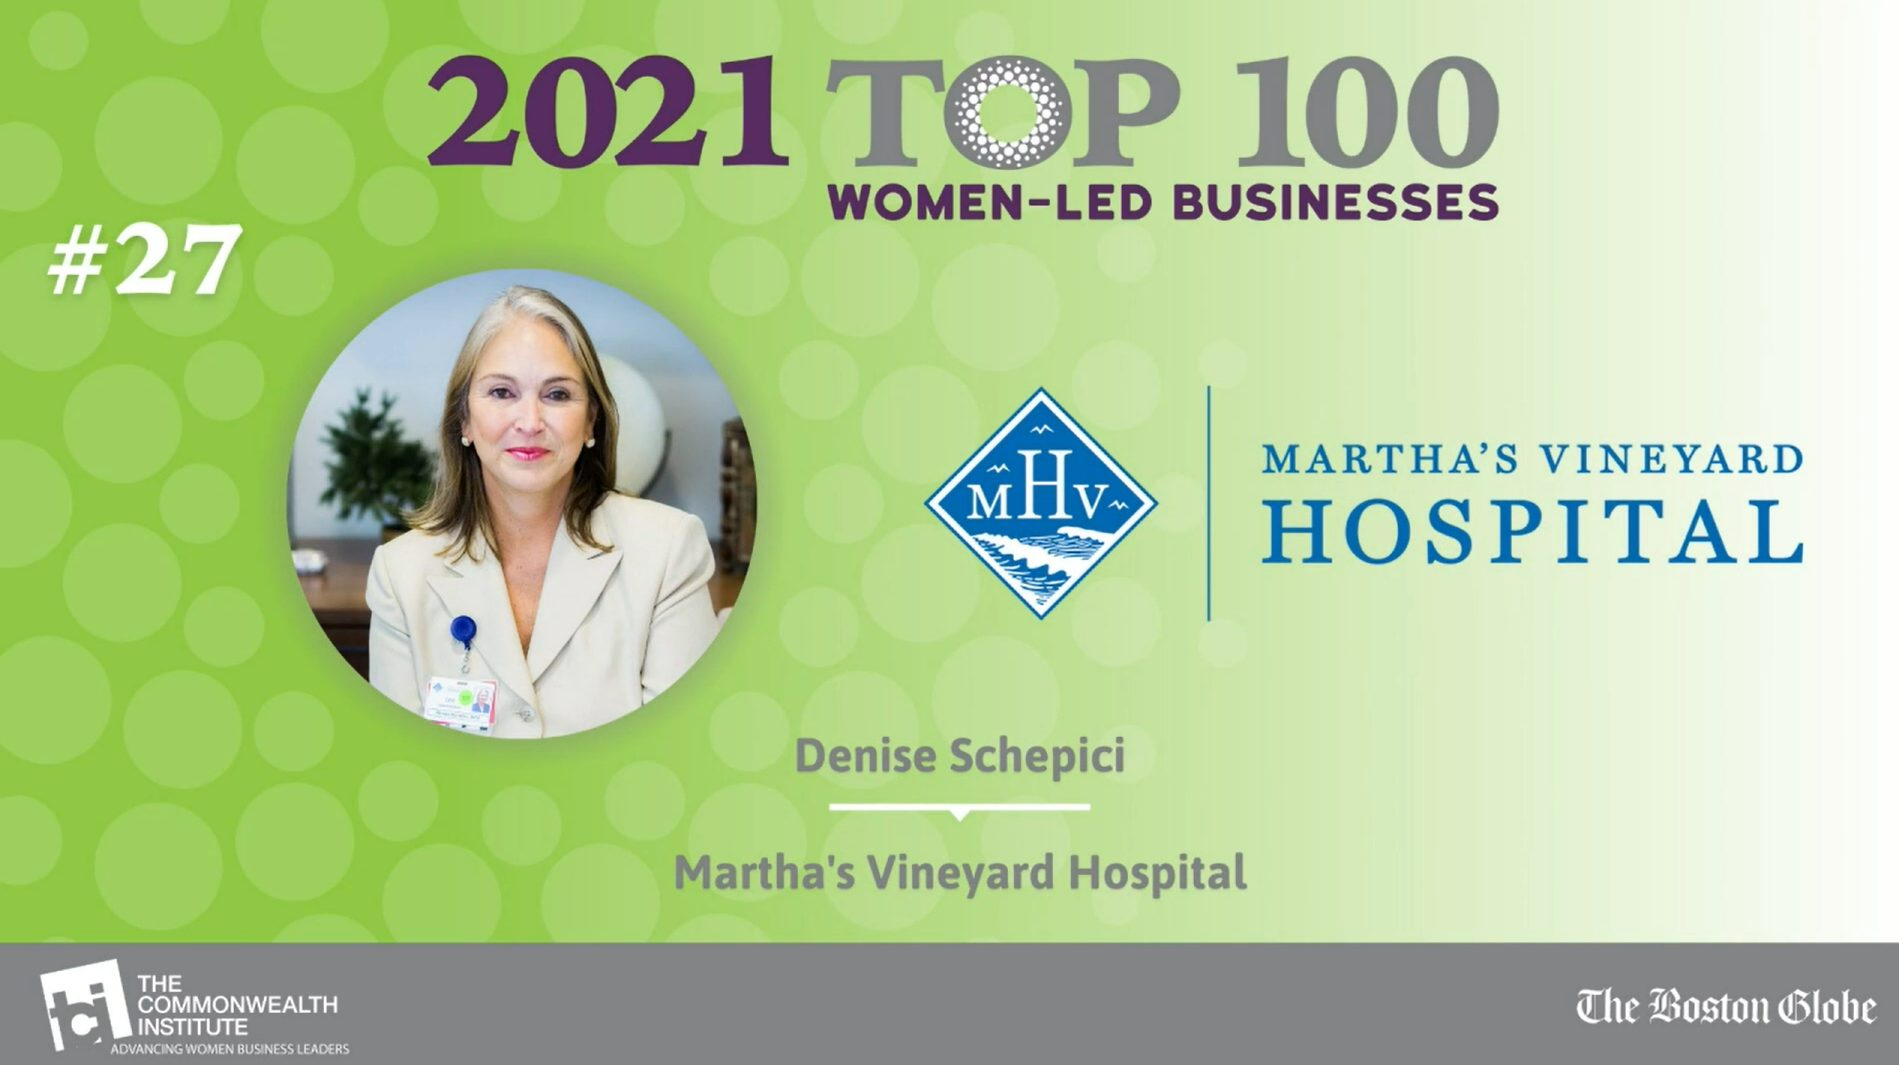 Martha’s Vineyard Hospital Named Among the Top 100 Women-Led Businesses in Massachusetts in 2021